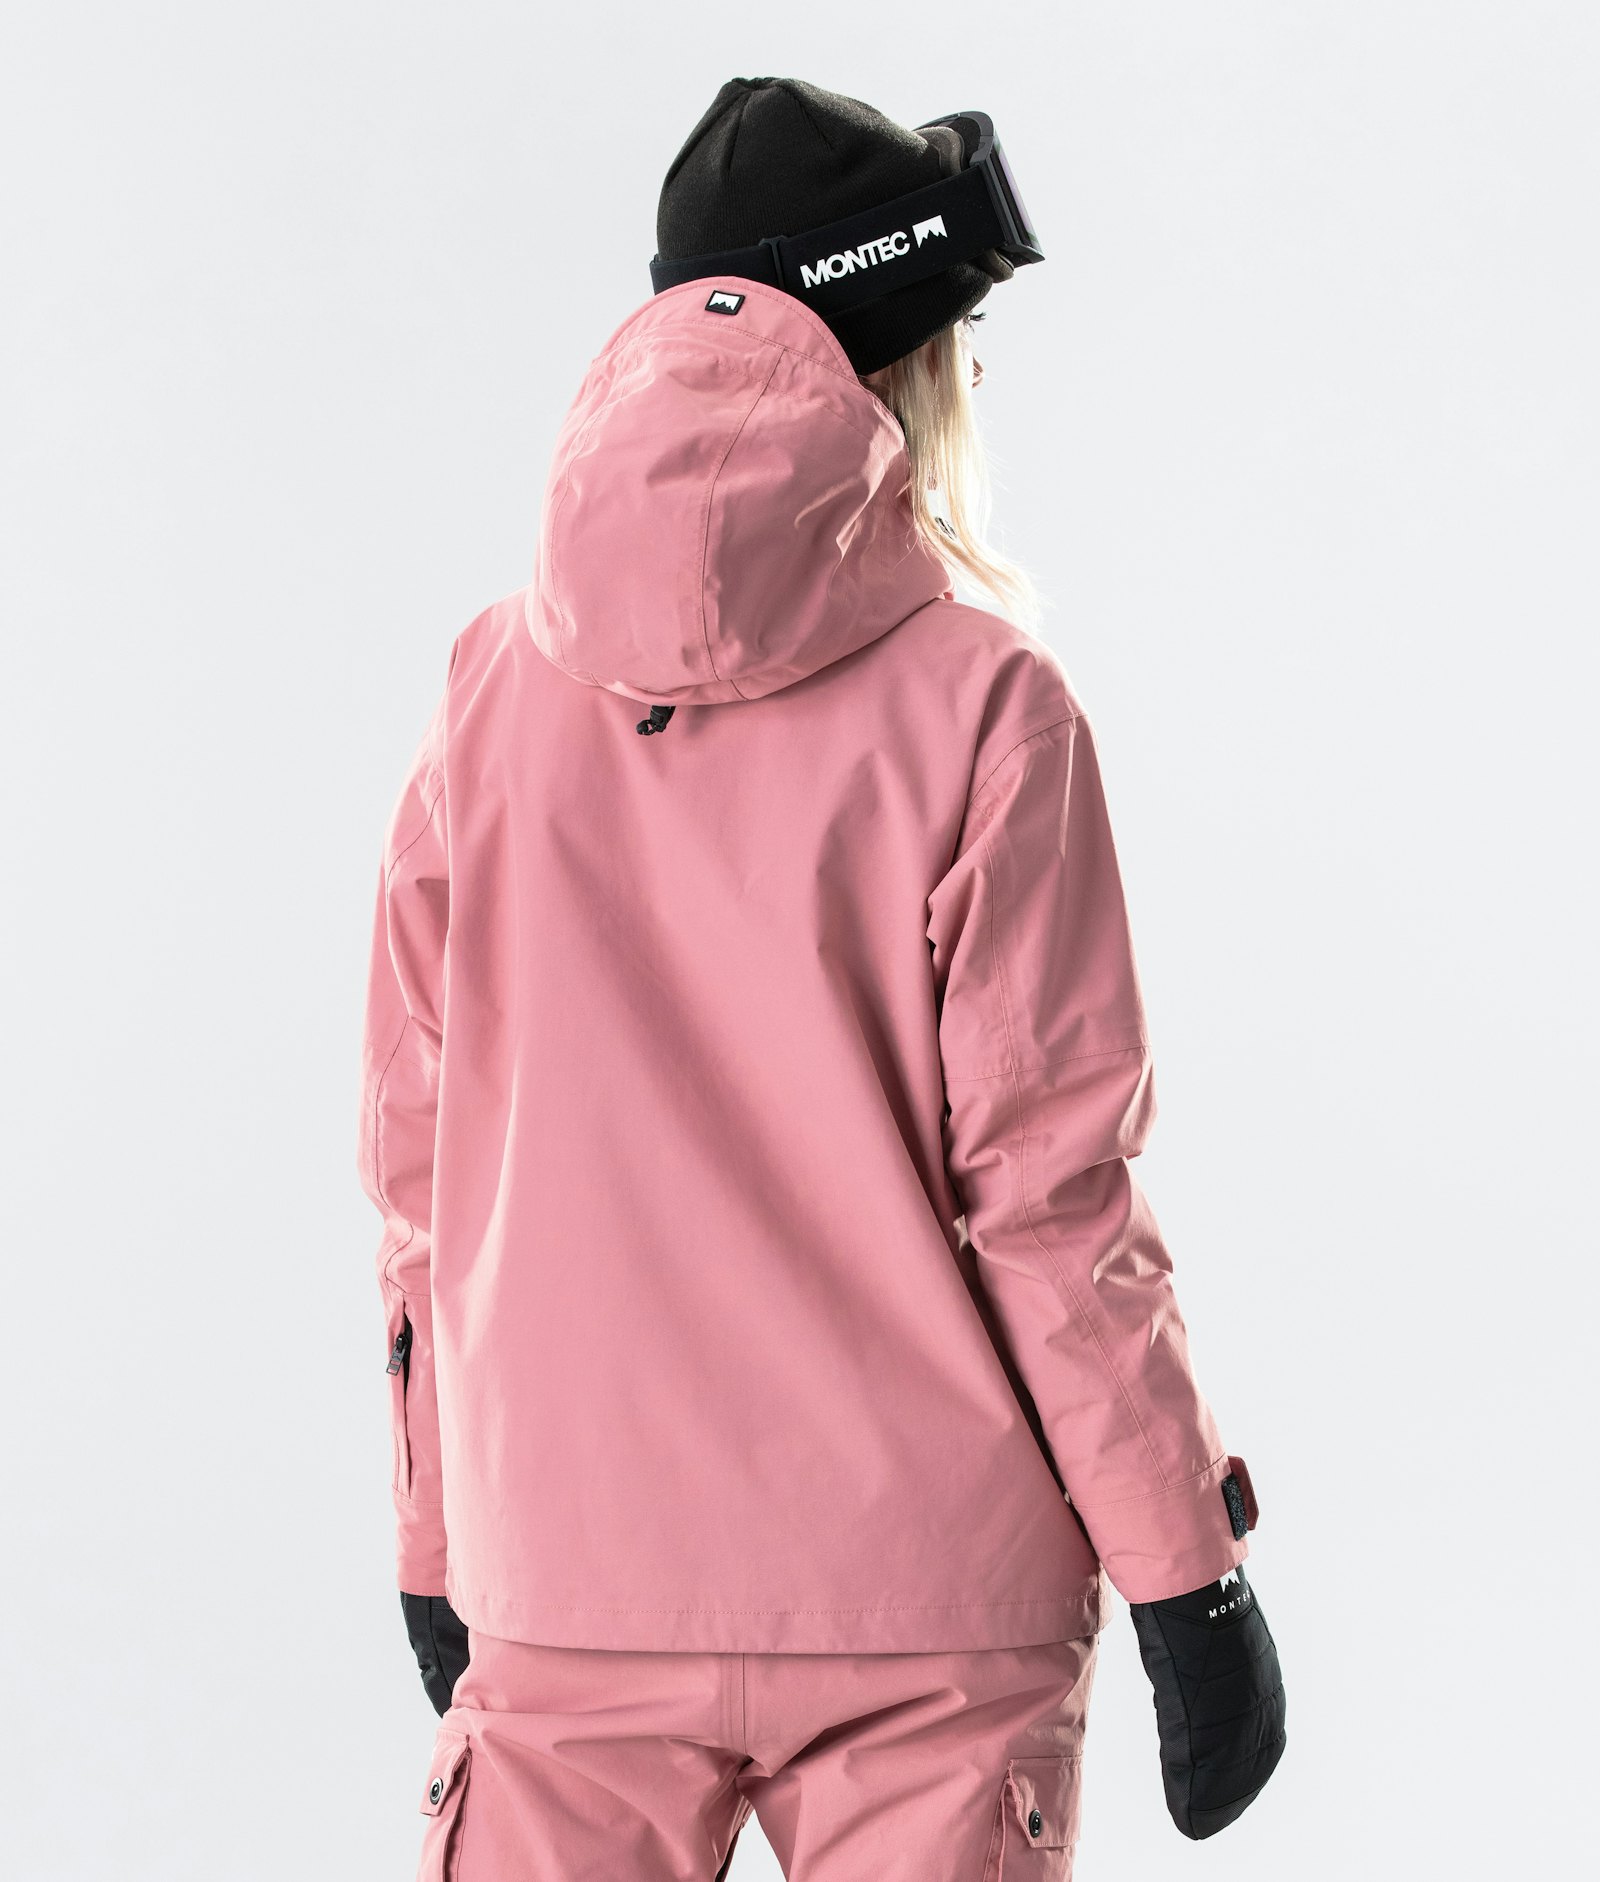 Typhoon W 2020 Snowboardjacke Damen Pink